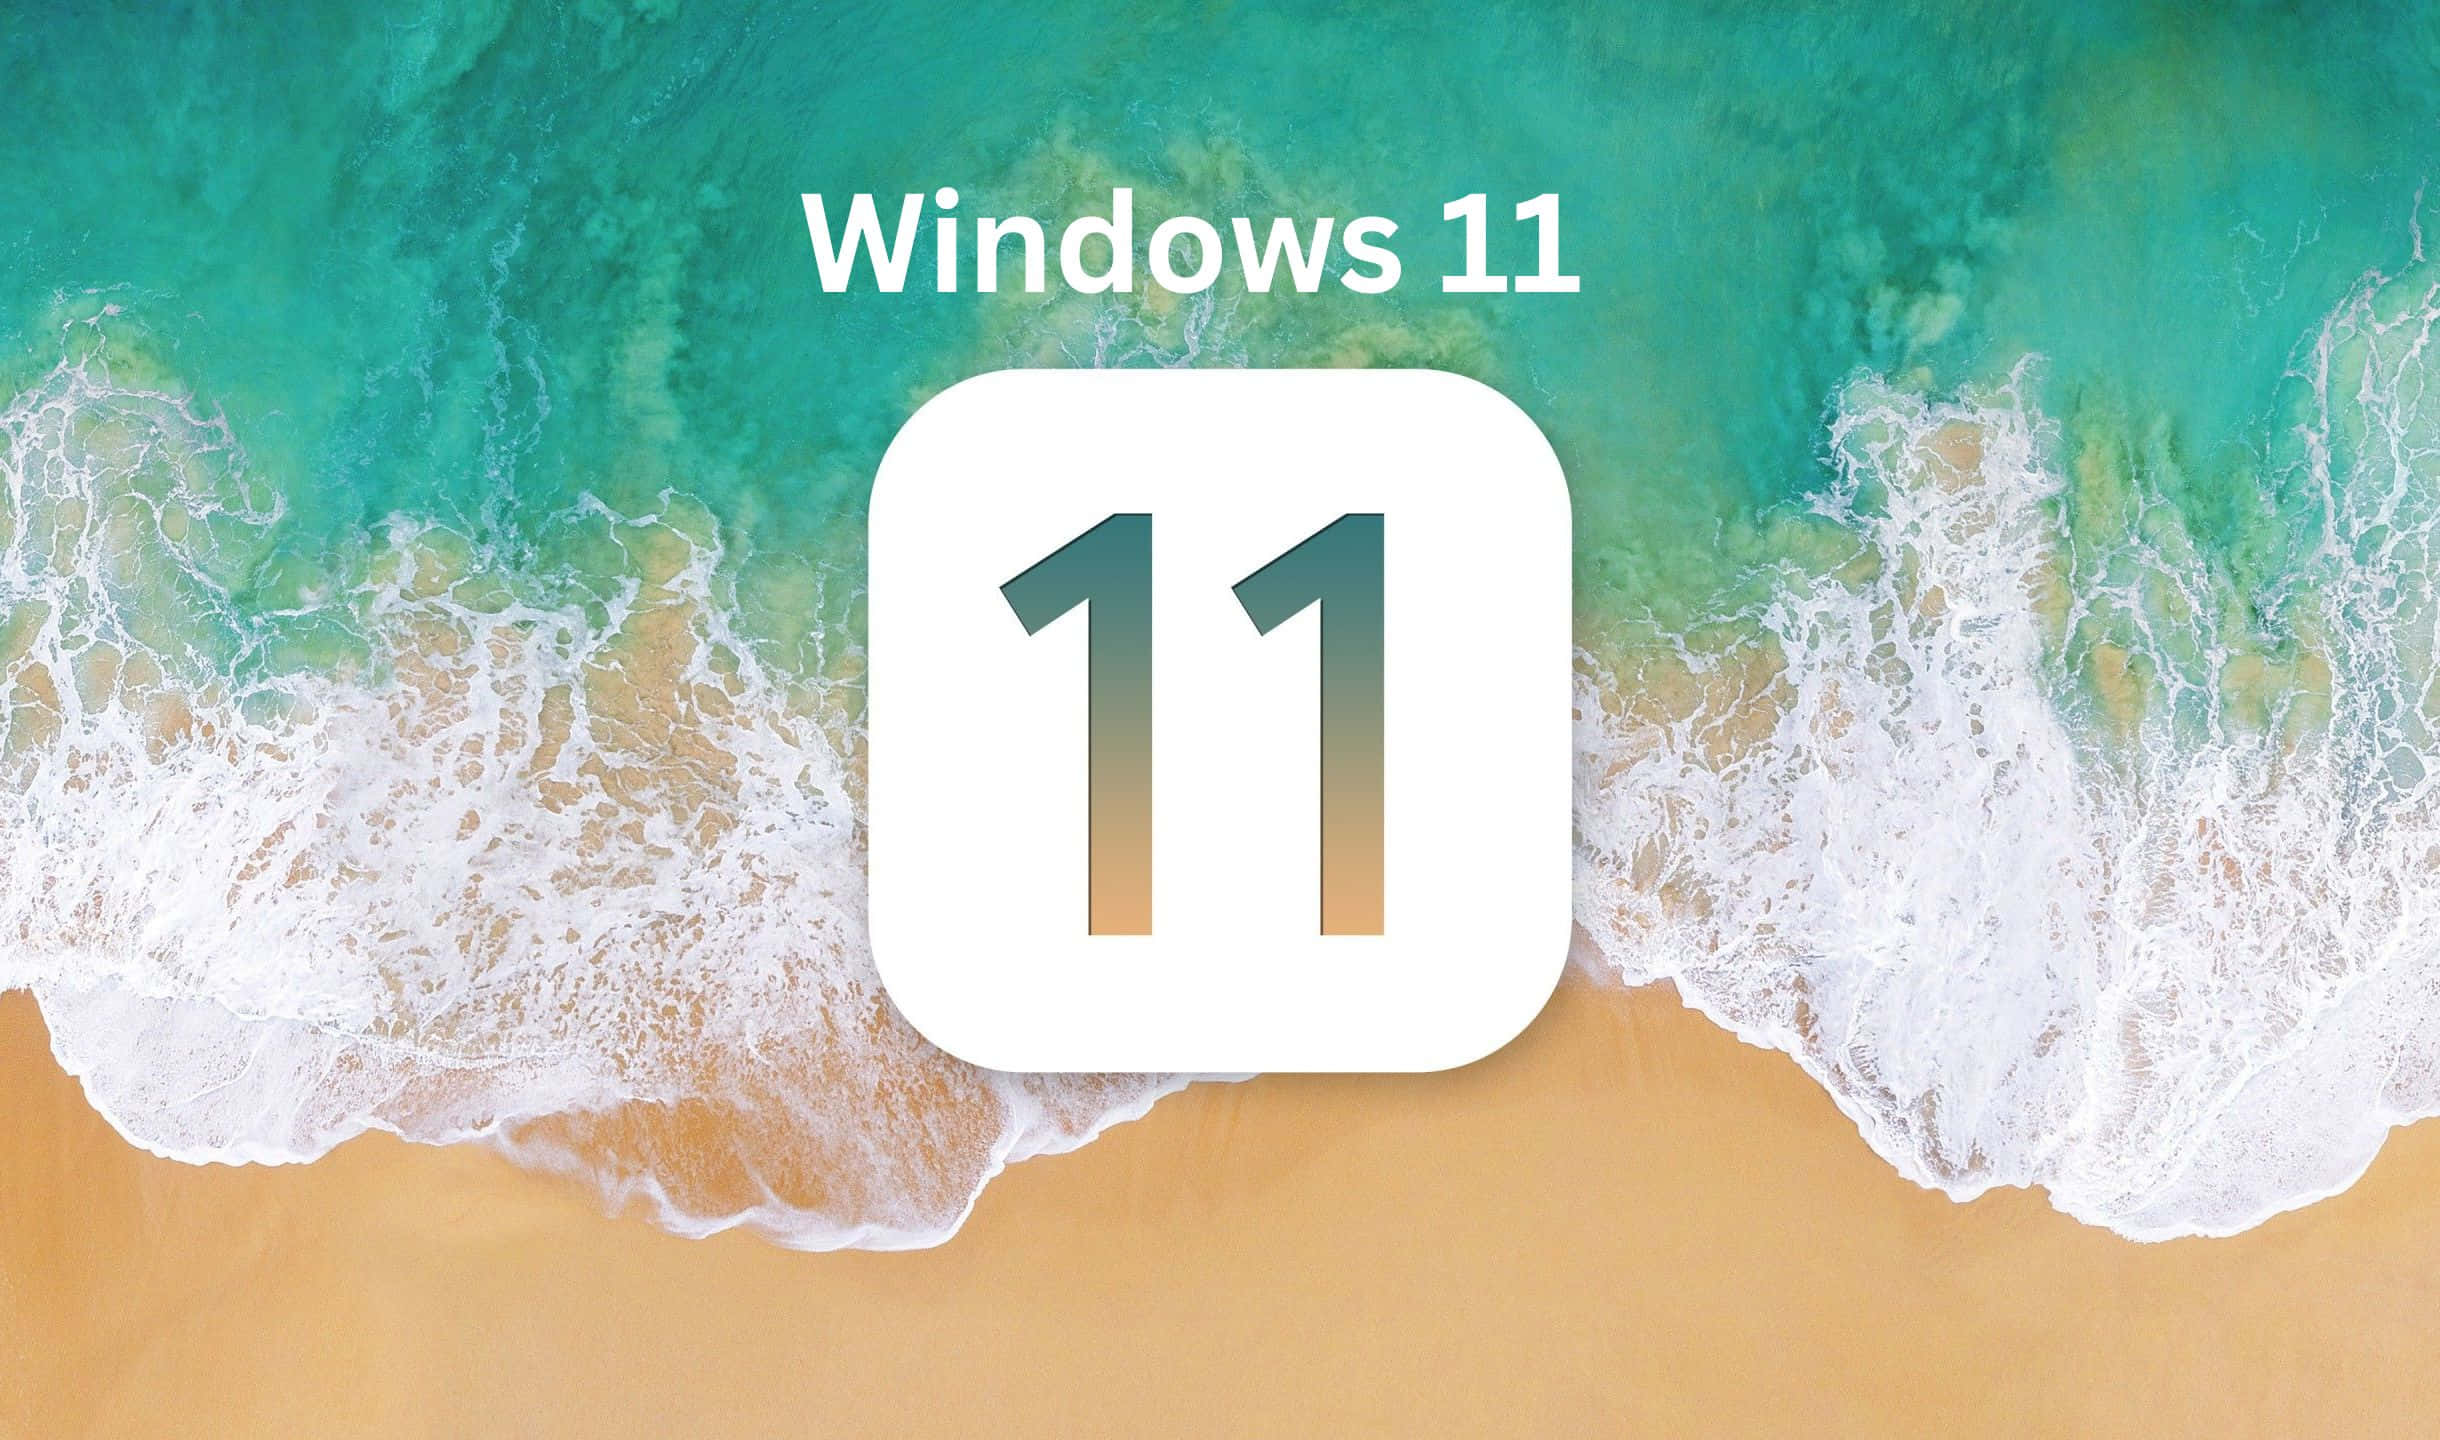 Introduktiontil Windows 11 - Redesignet Til Enkelthed